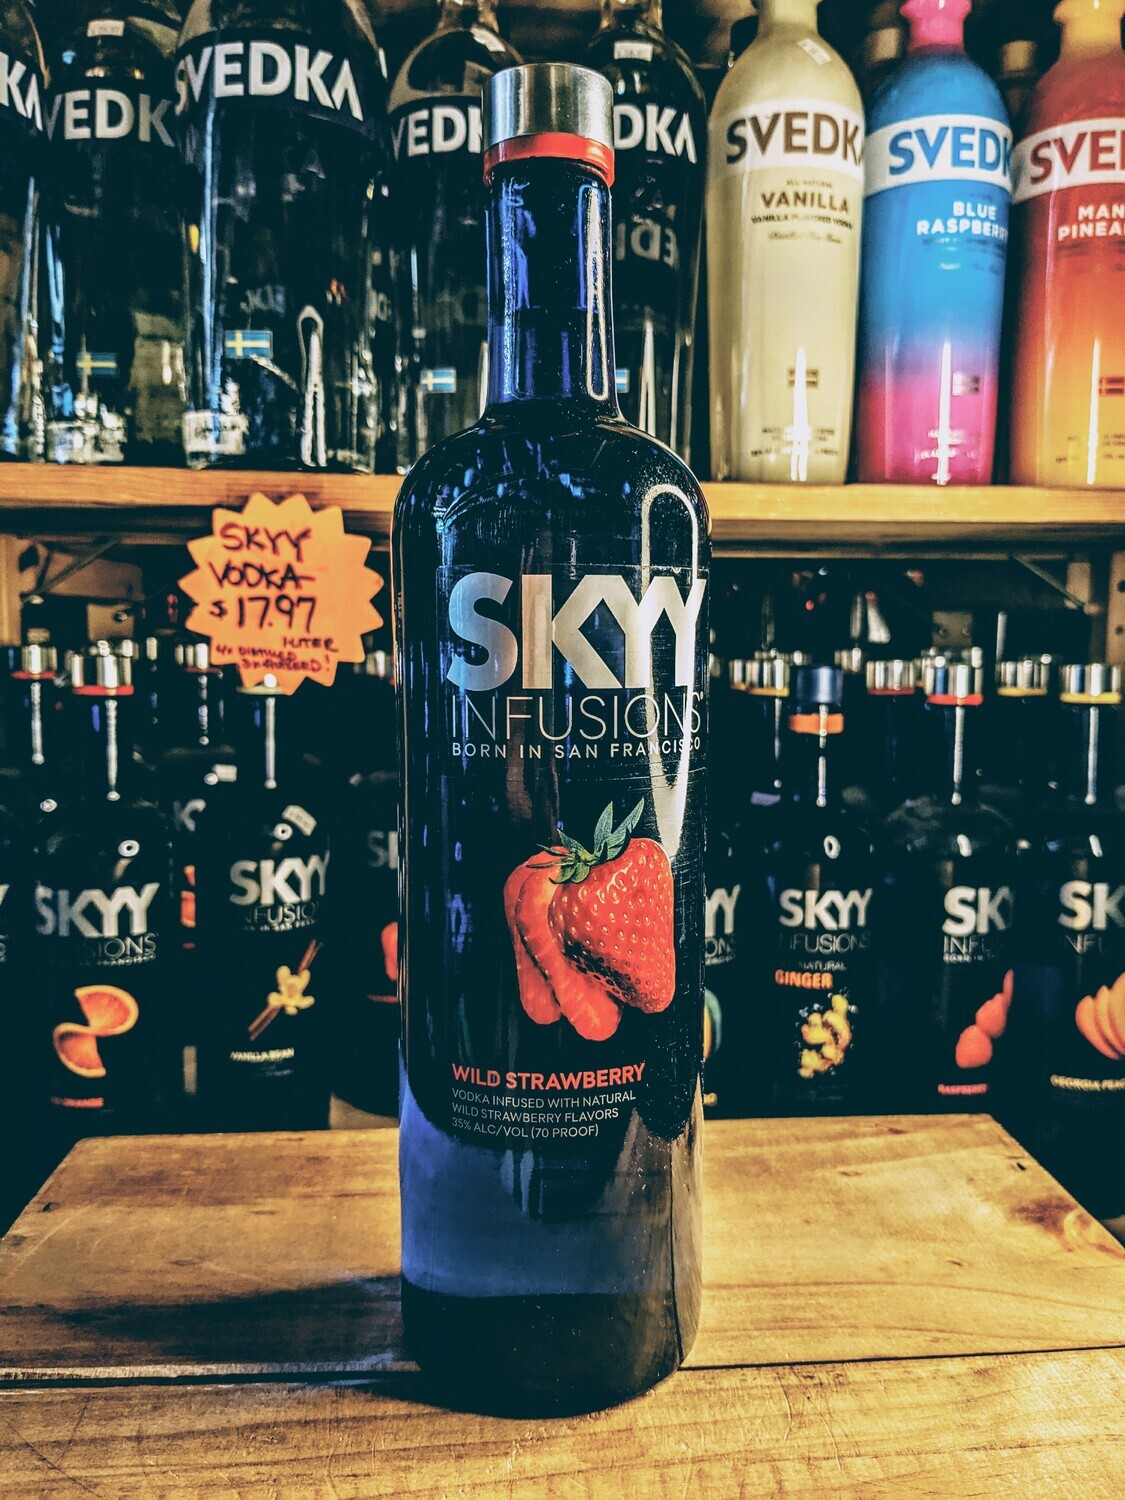 Skyy Wild Strawberry